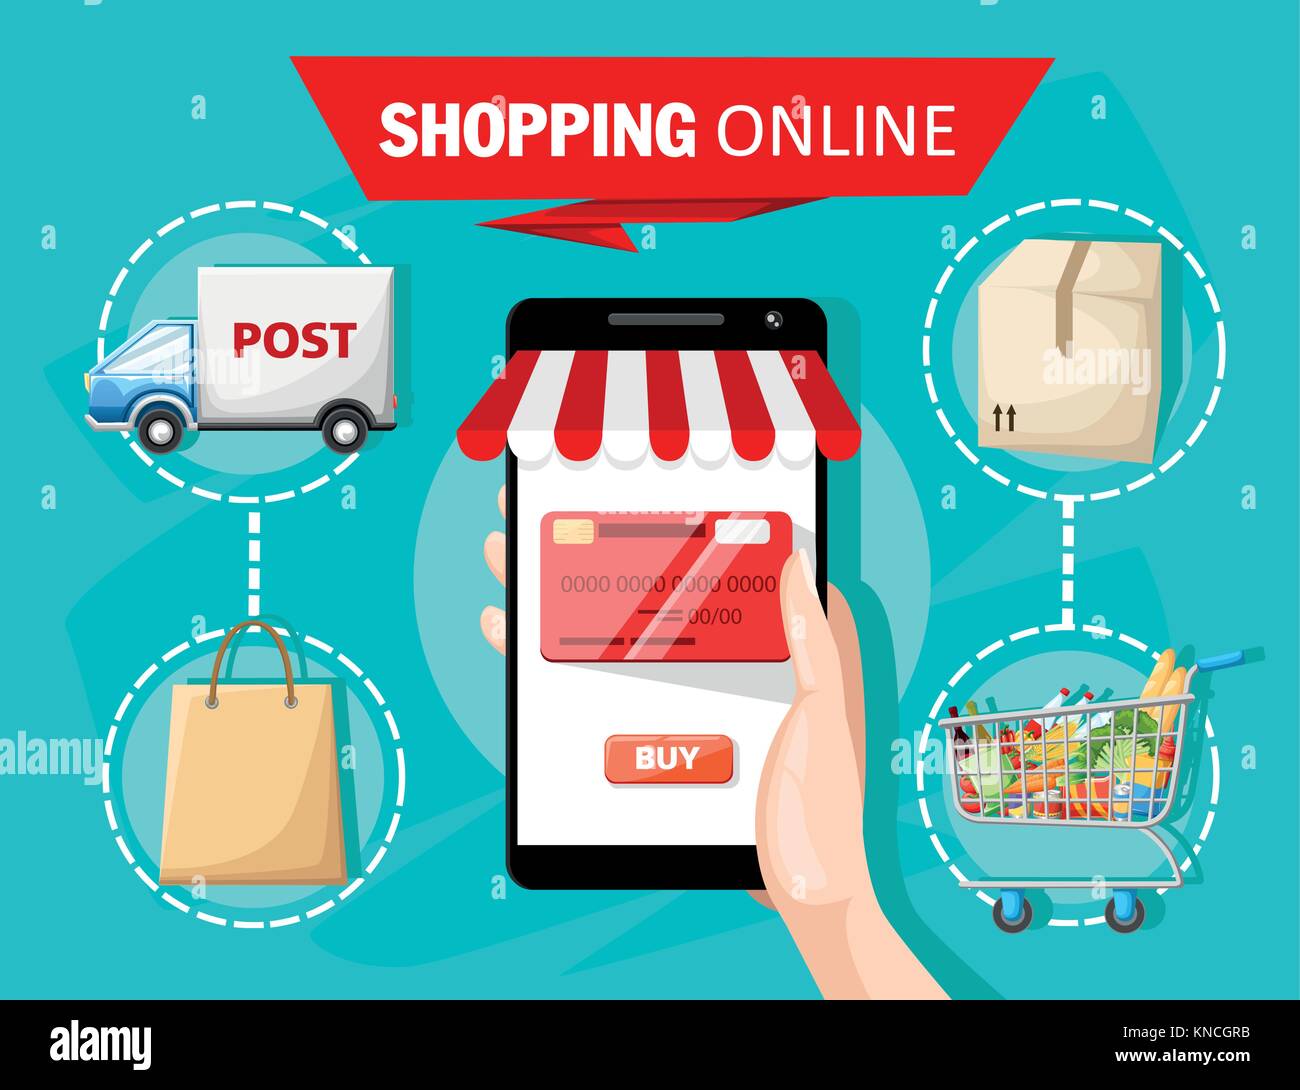 Flache vektor design mit e-Commerce und Online shopping Symbole und Elemente für mobile Geschichte Symbole der Shop online Zahlung Service und liefern Stock Vektor